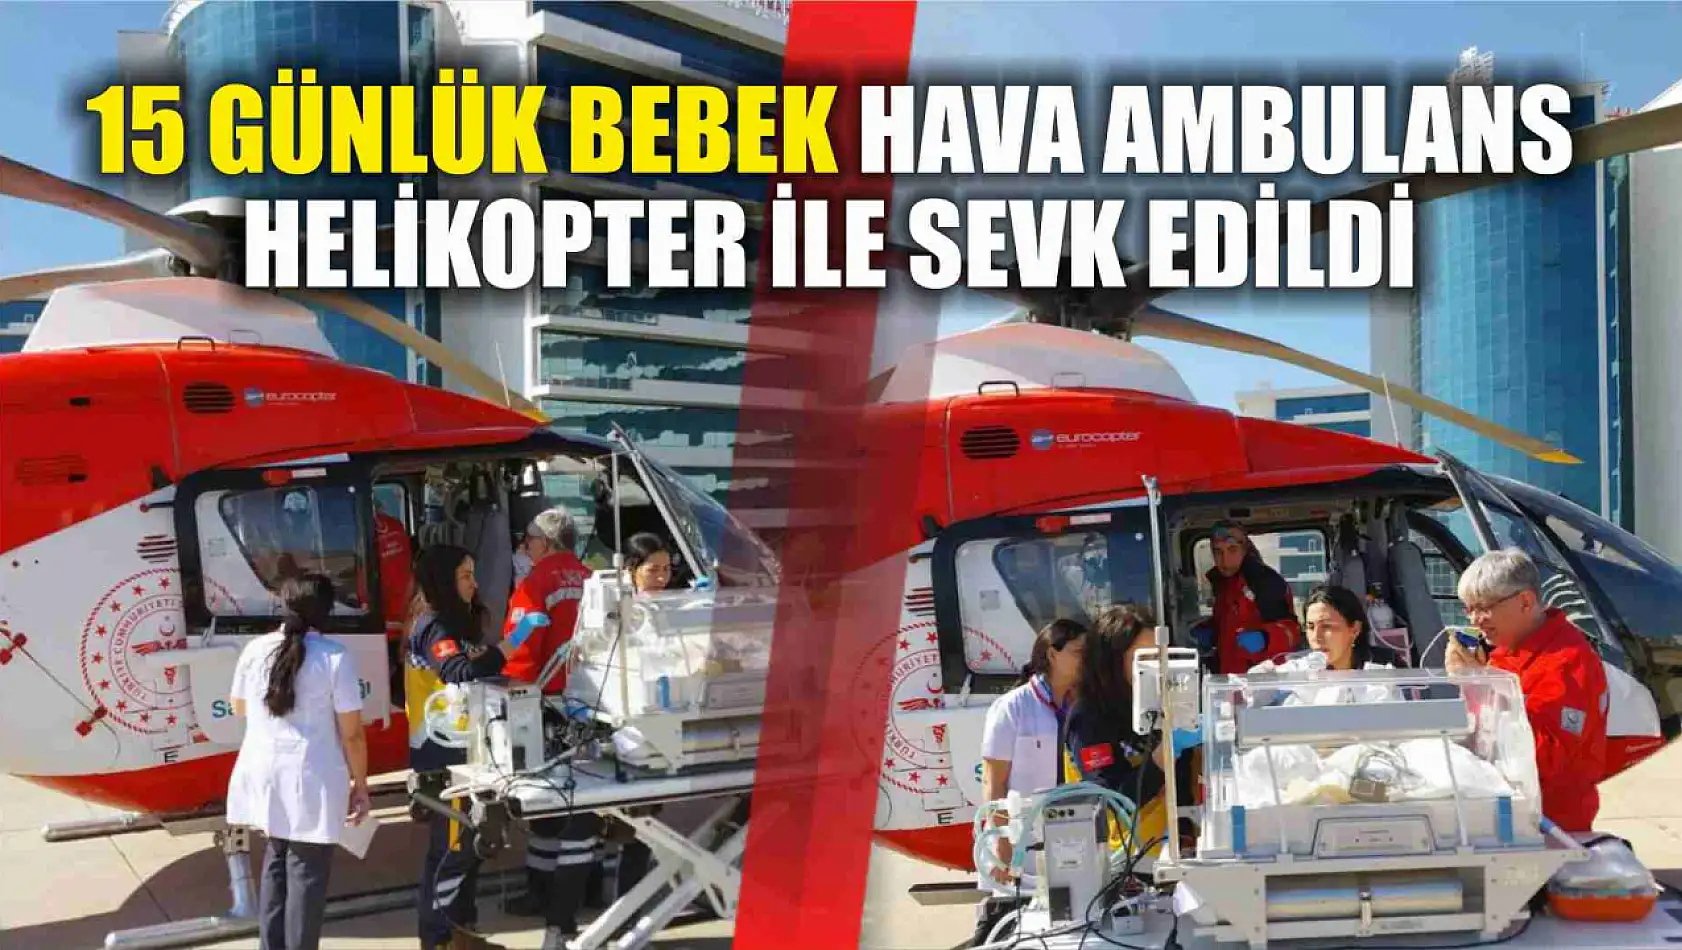 15 günlük bebek hava ambulans helikopter ile sevk edildi